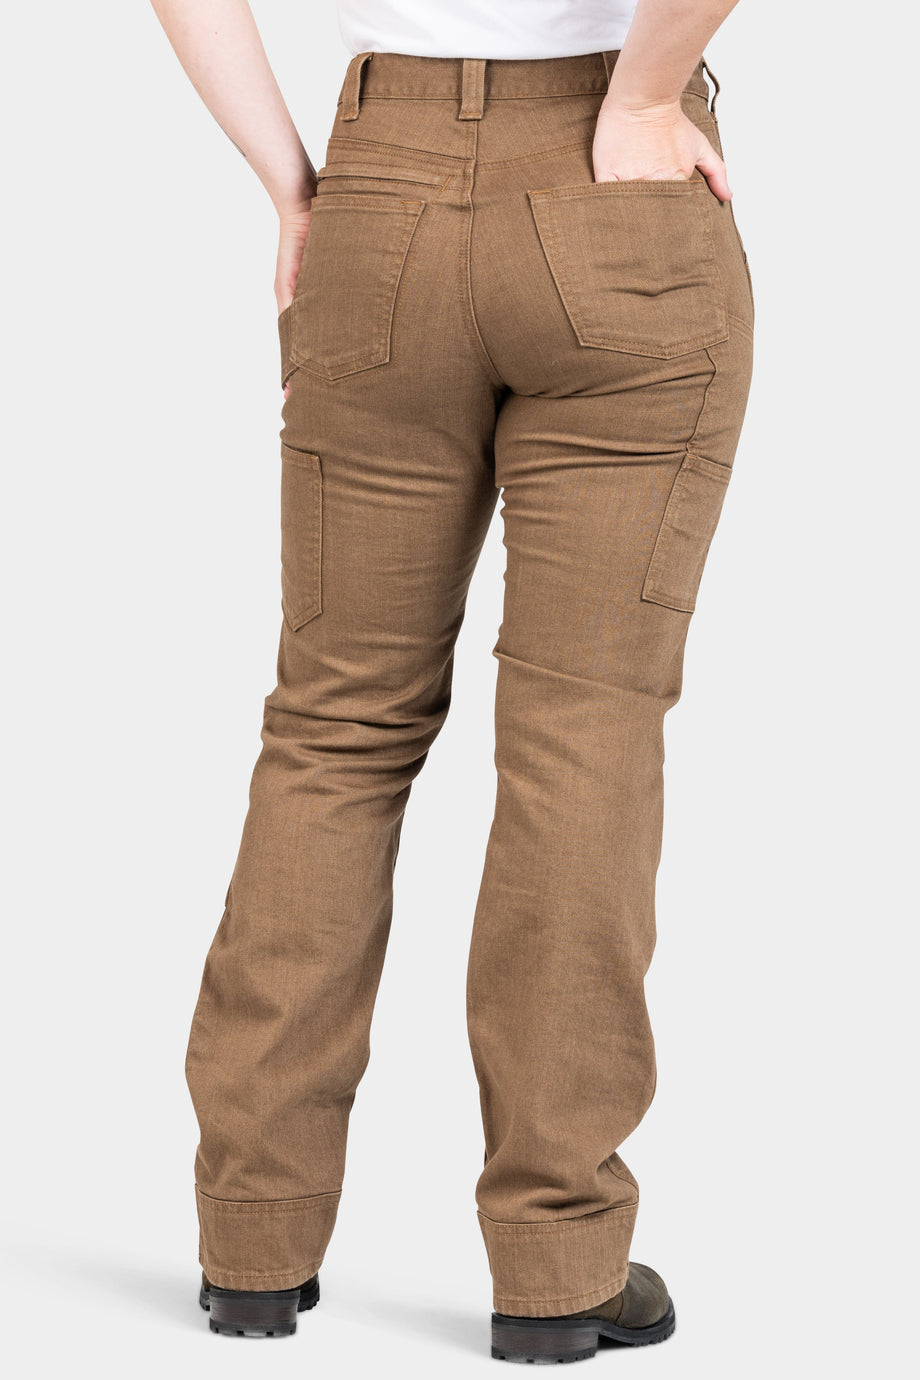 Pantalon taille haute à enfiler - P19-HW23 - (R-A11) - VENTE FINALE